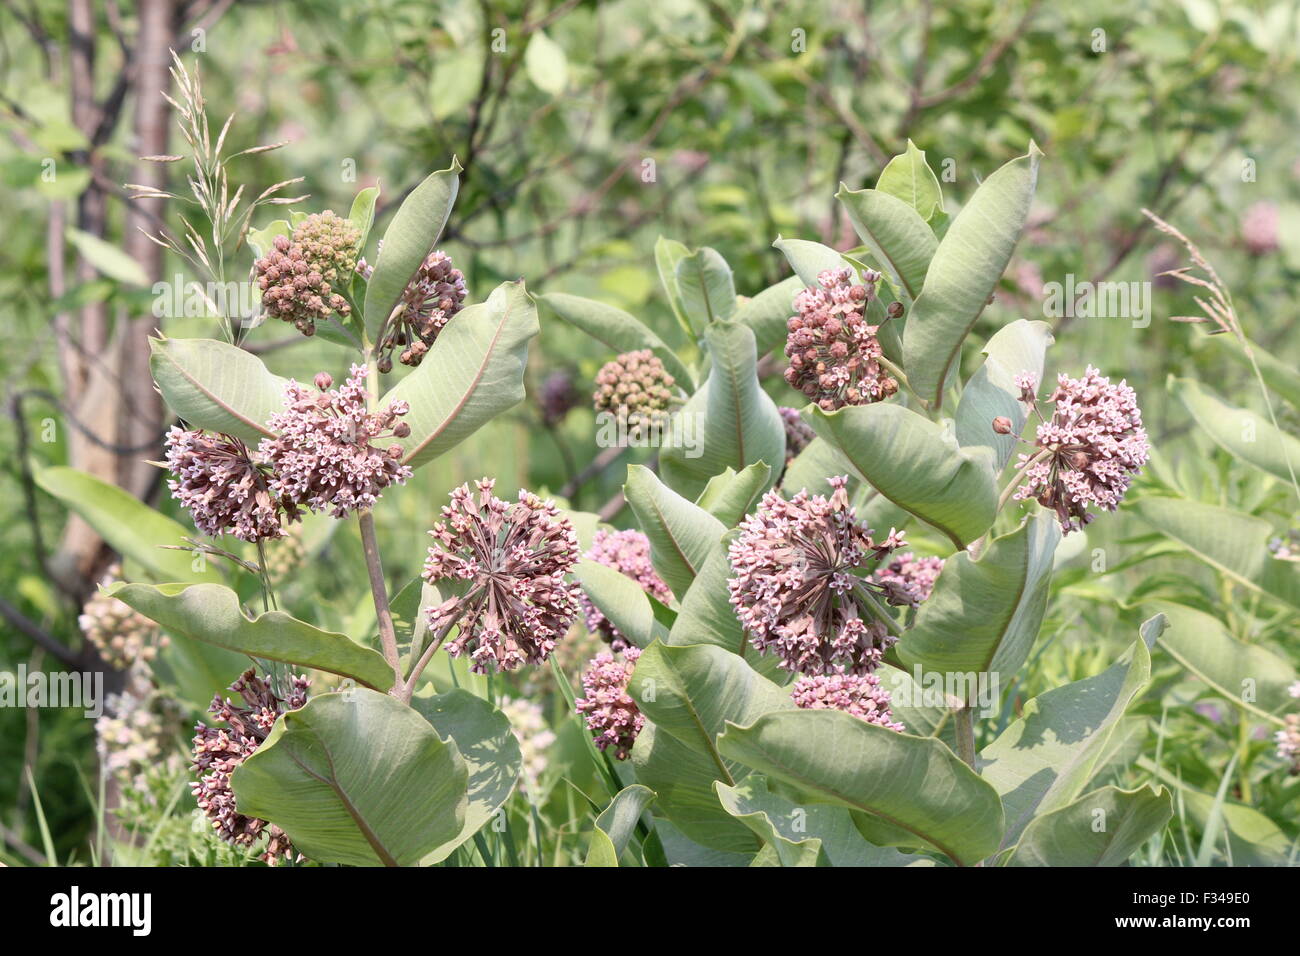 Fioritura milkweed impianto. Milkweed i fiori sbocciano da giugno ad agosto Foto Stock